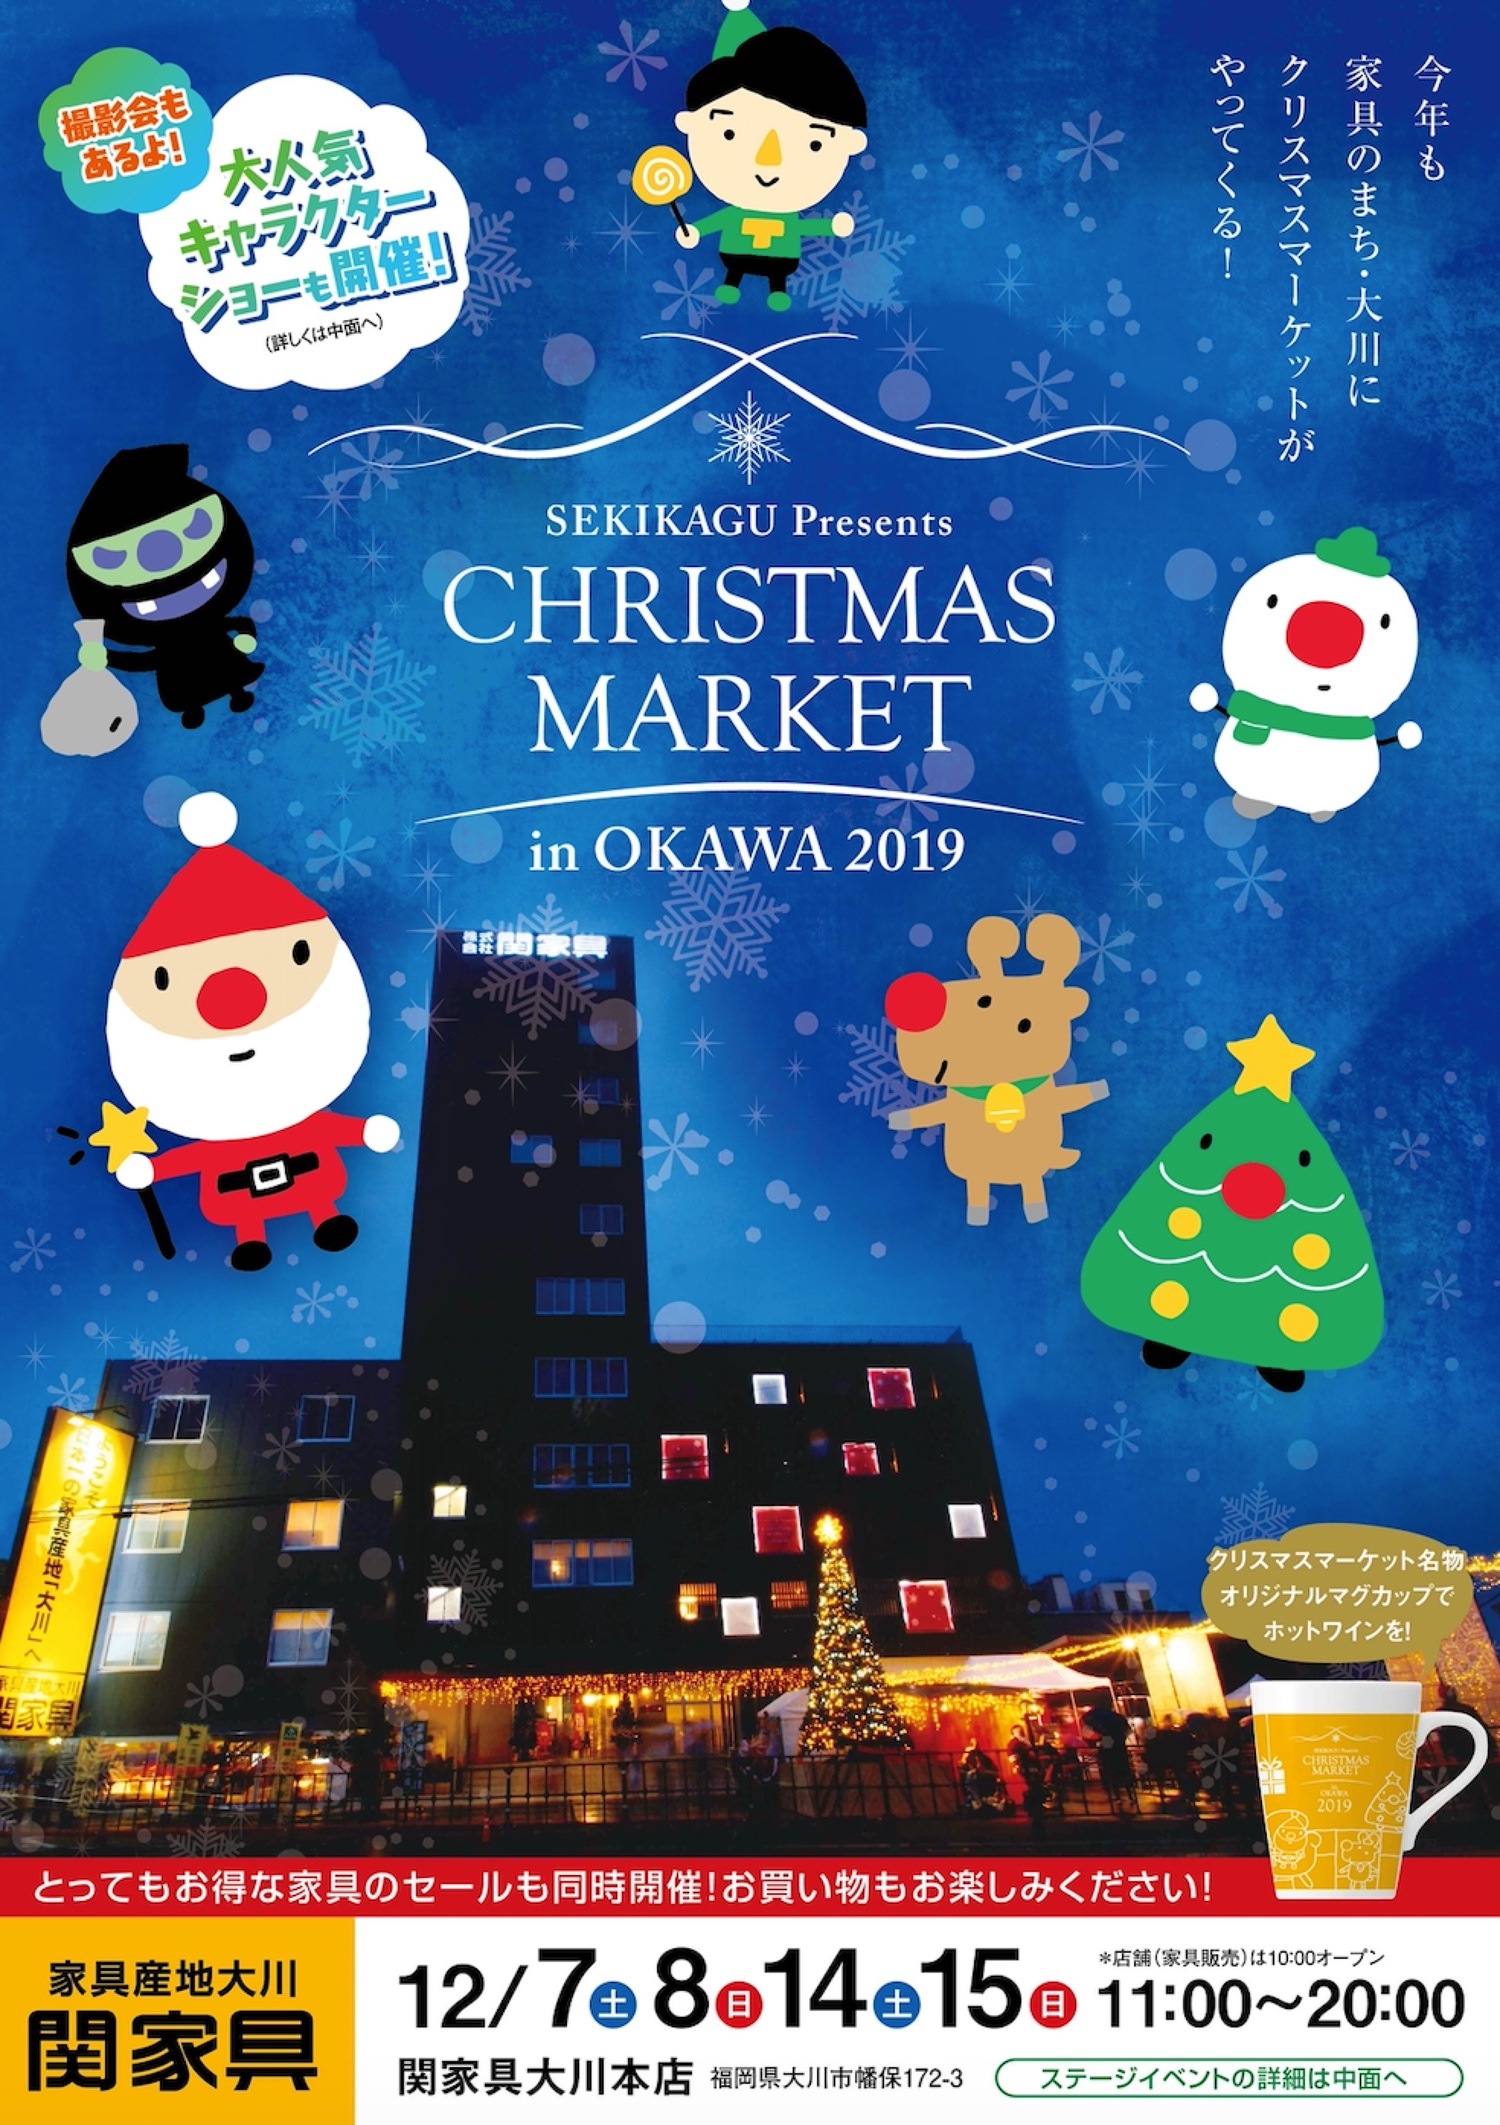 関家具 クリスマスマーケットin 大川2019 ライブやマルシェなどイベント盛りだくさん